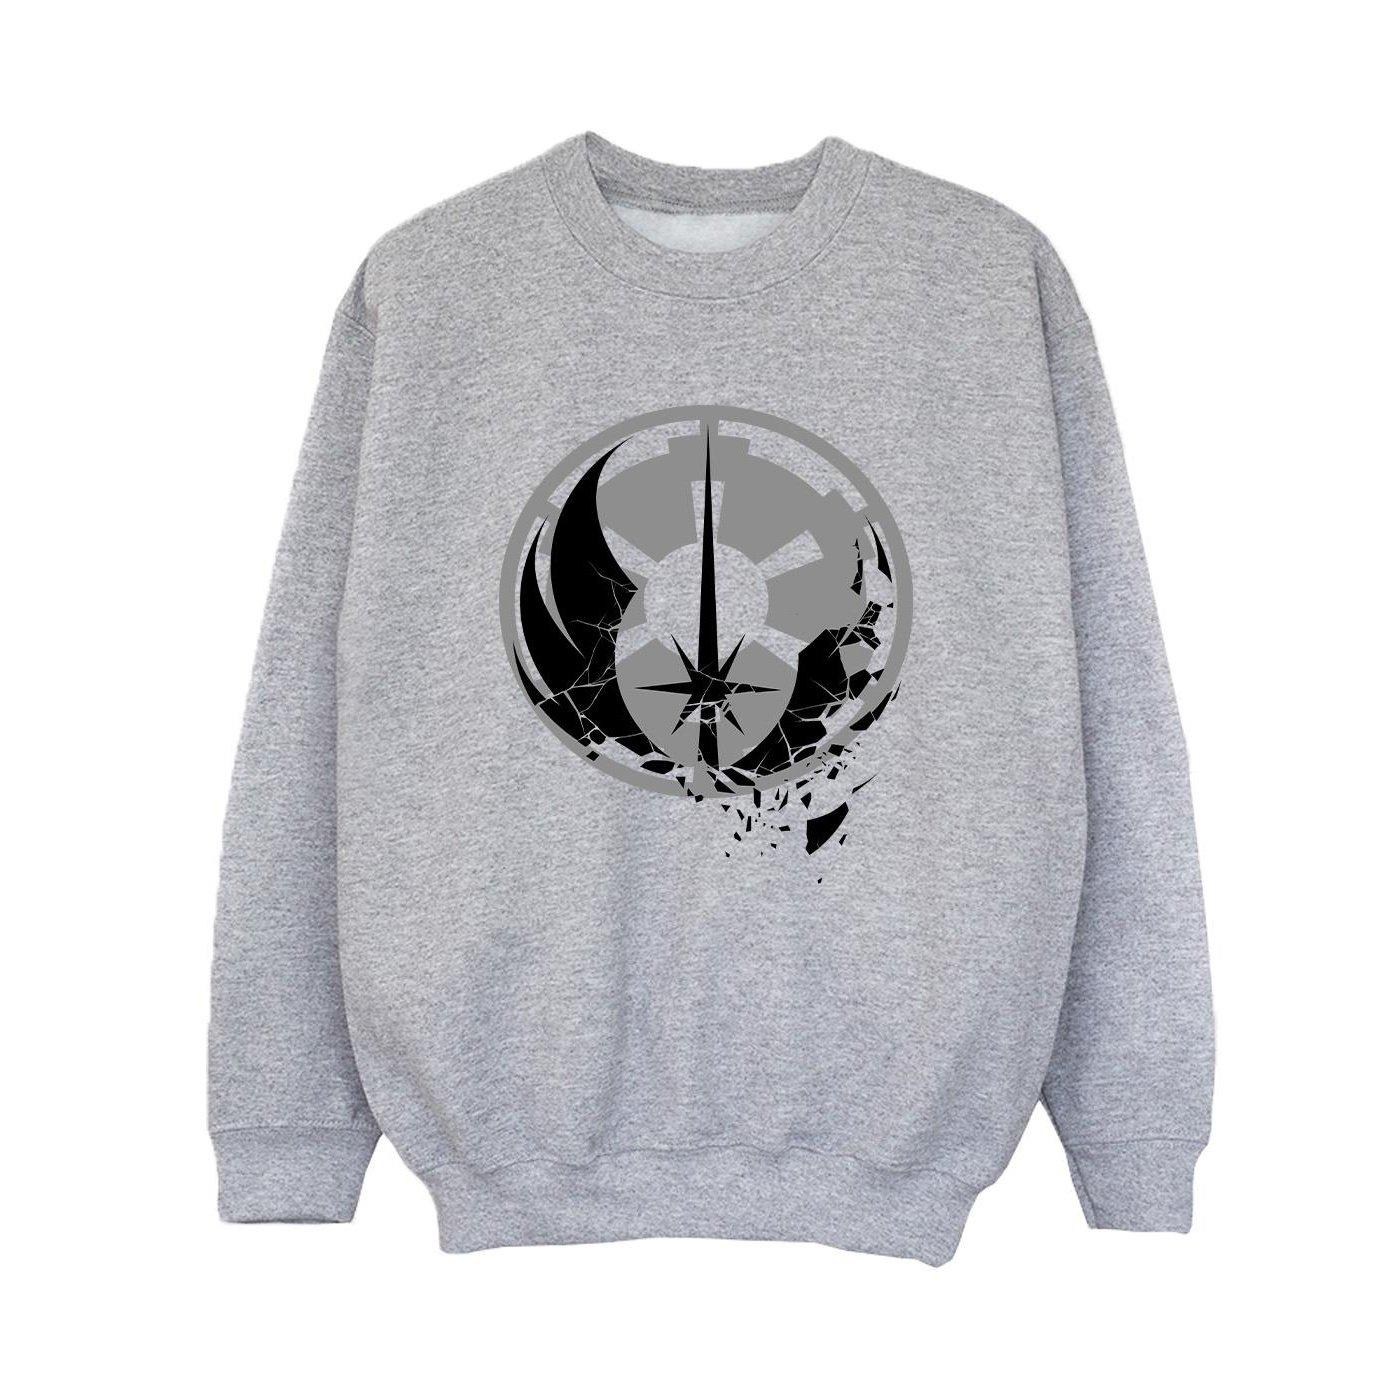 Obiwan Kenobi Fractured Logos Sweatshirt Jungen Grau 104 von STAR WARS